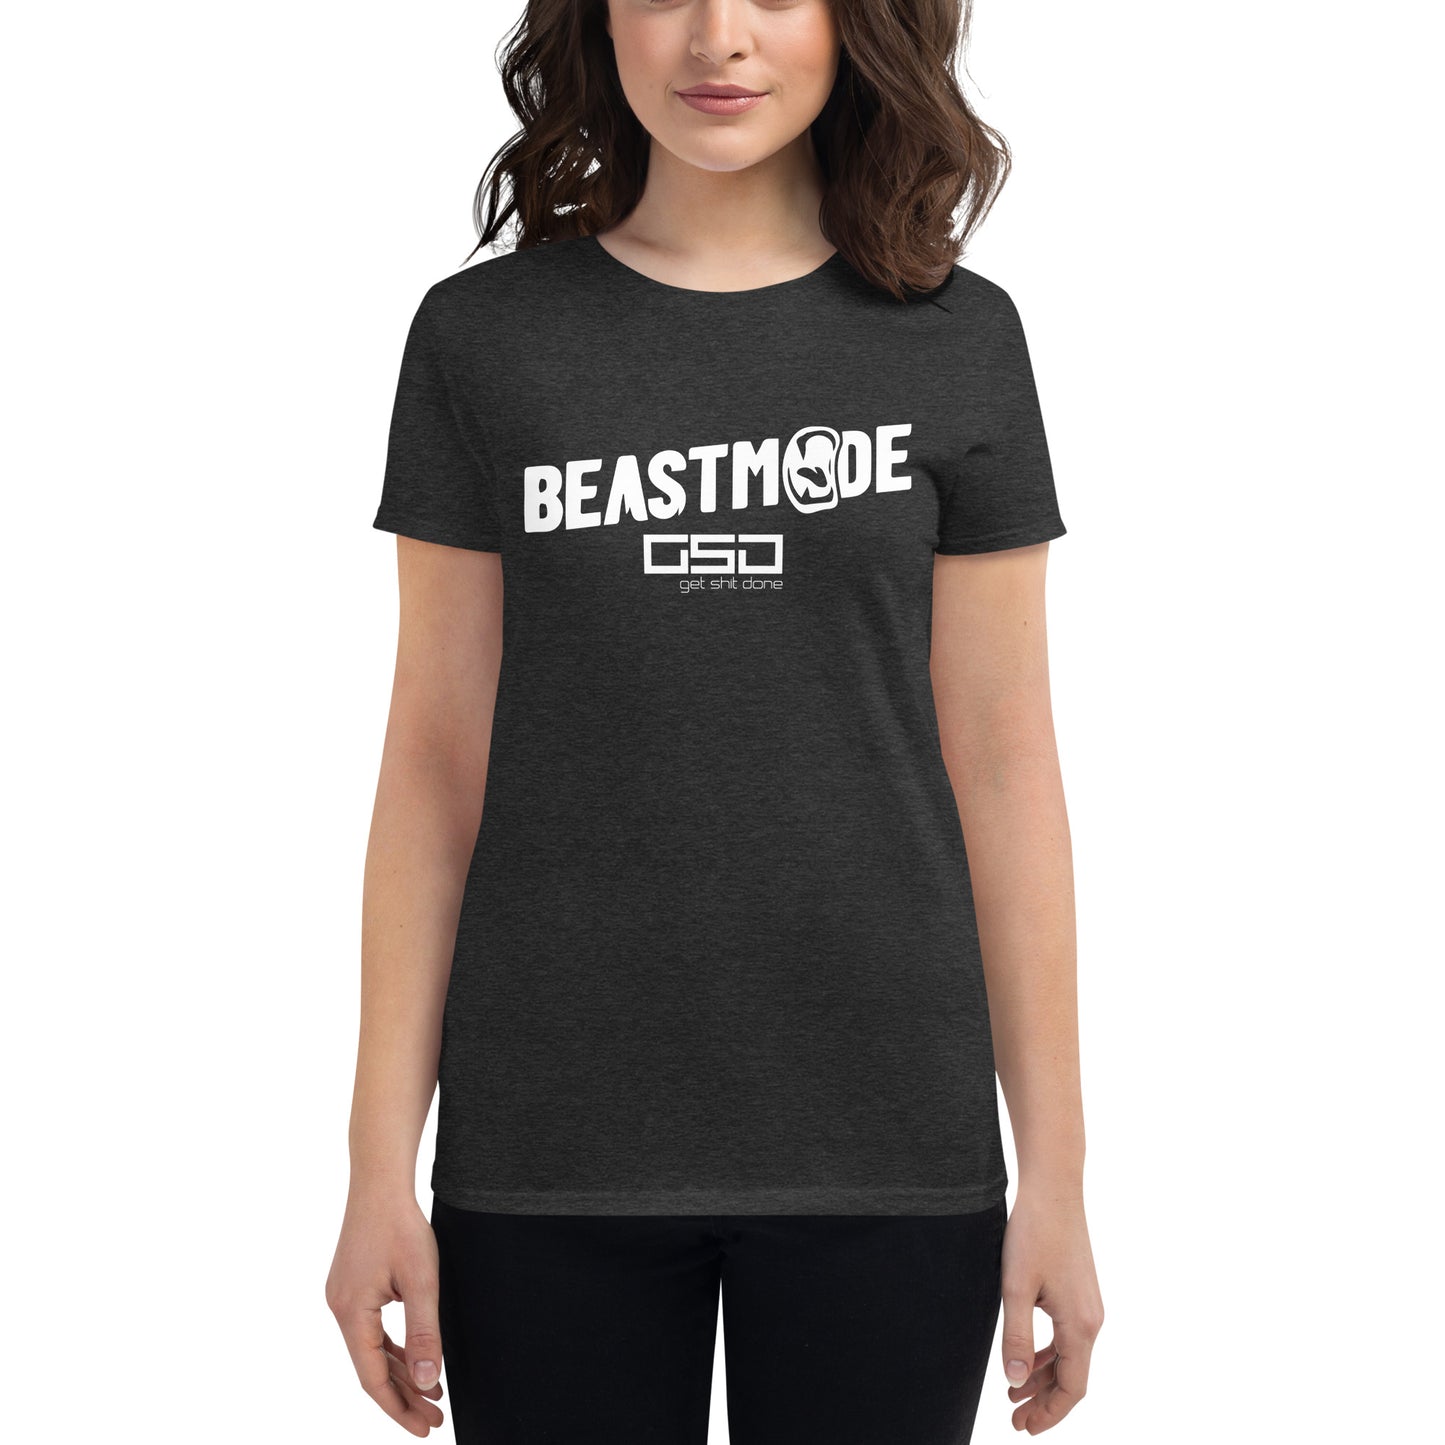 BEAST MODE-Women's short sleeve t-shirt